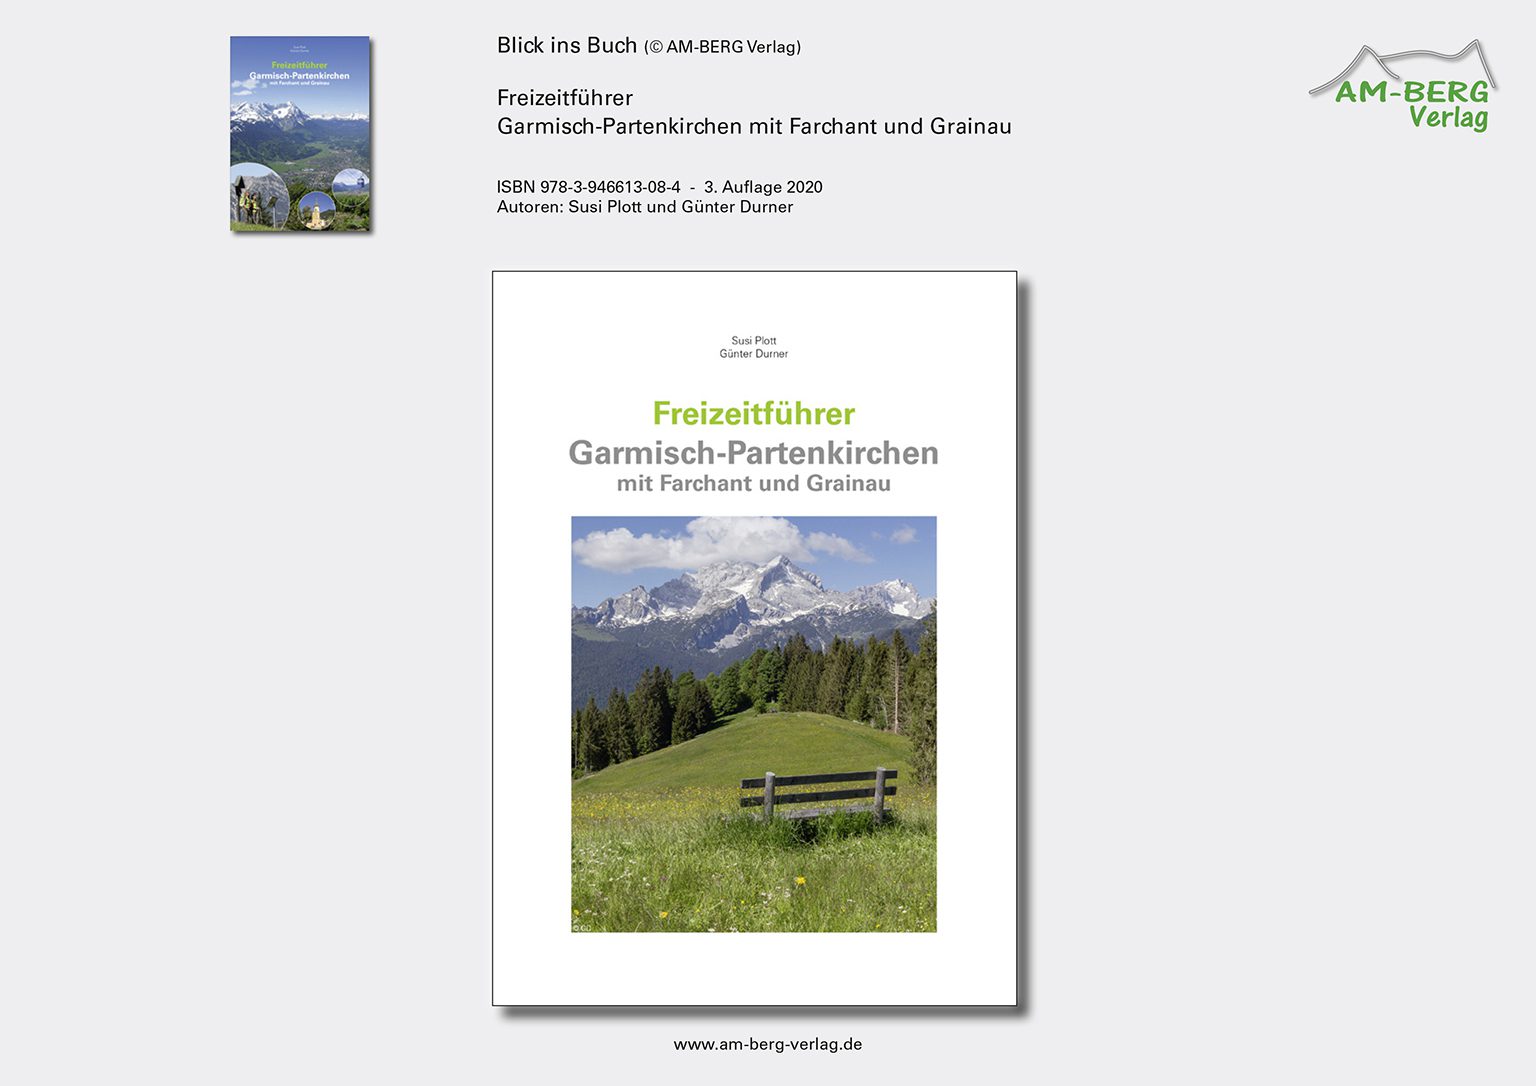 Freizeitführer Garmisch-Partenkirchen mit Farchant und Grainau_BlickinsBuch01